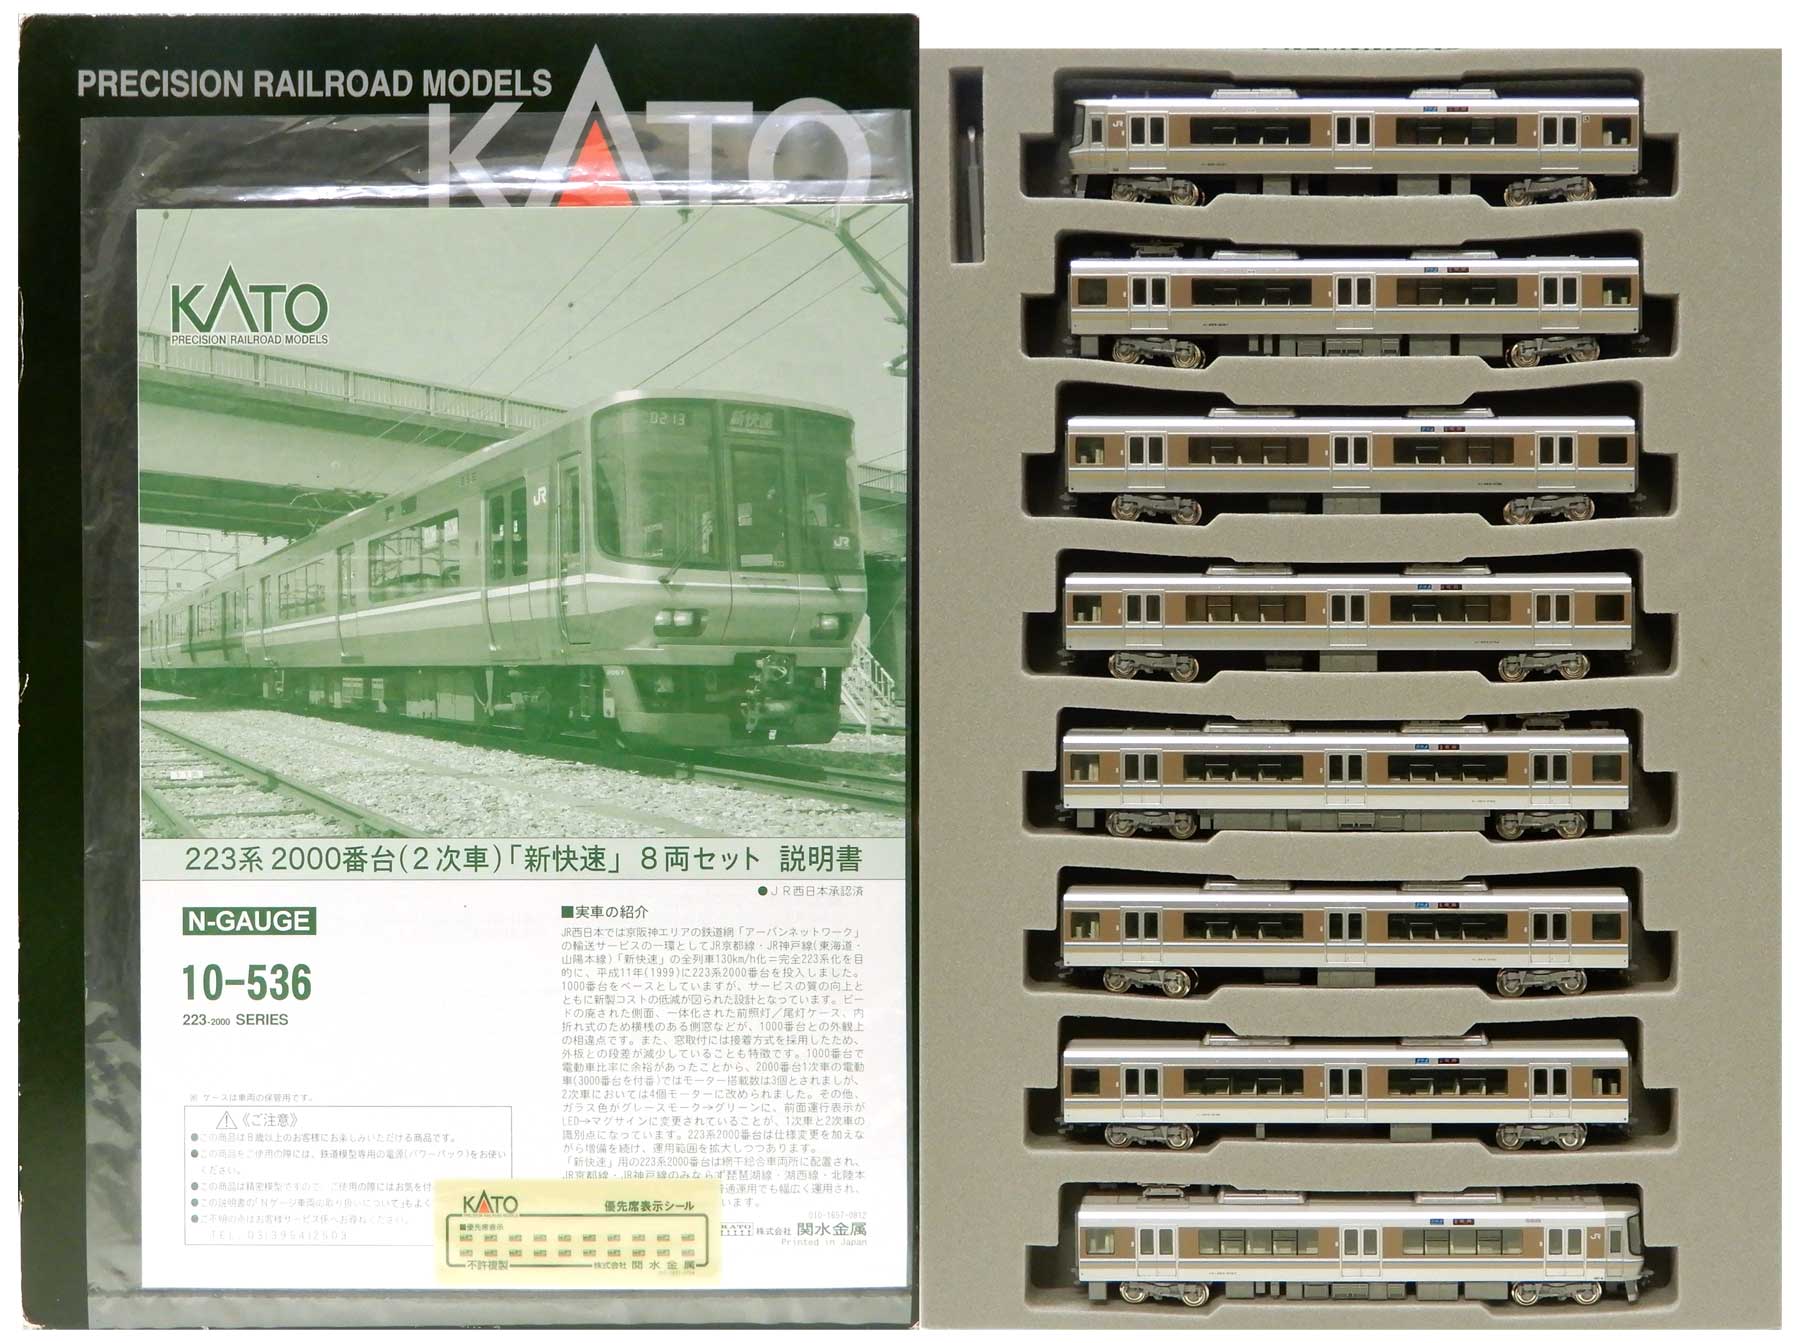 【安いお得】KATO Nゲージ 10-536 223系2000番台(2次車) 新快速 8両セット 鉄道模型 近郊形電車